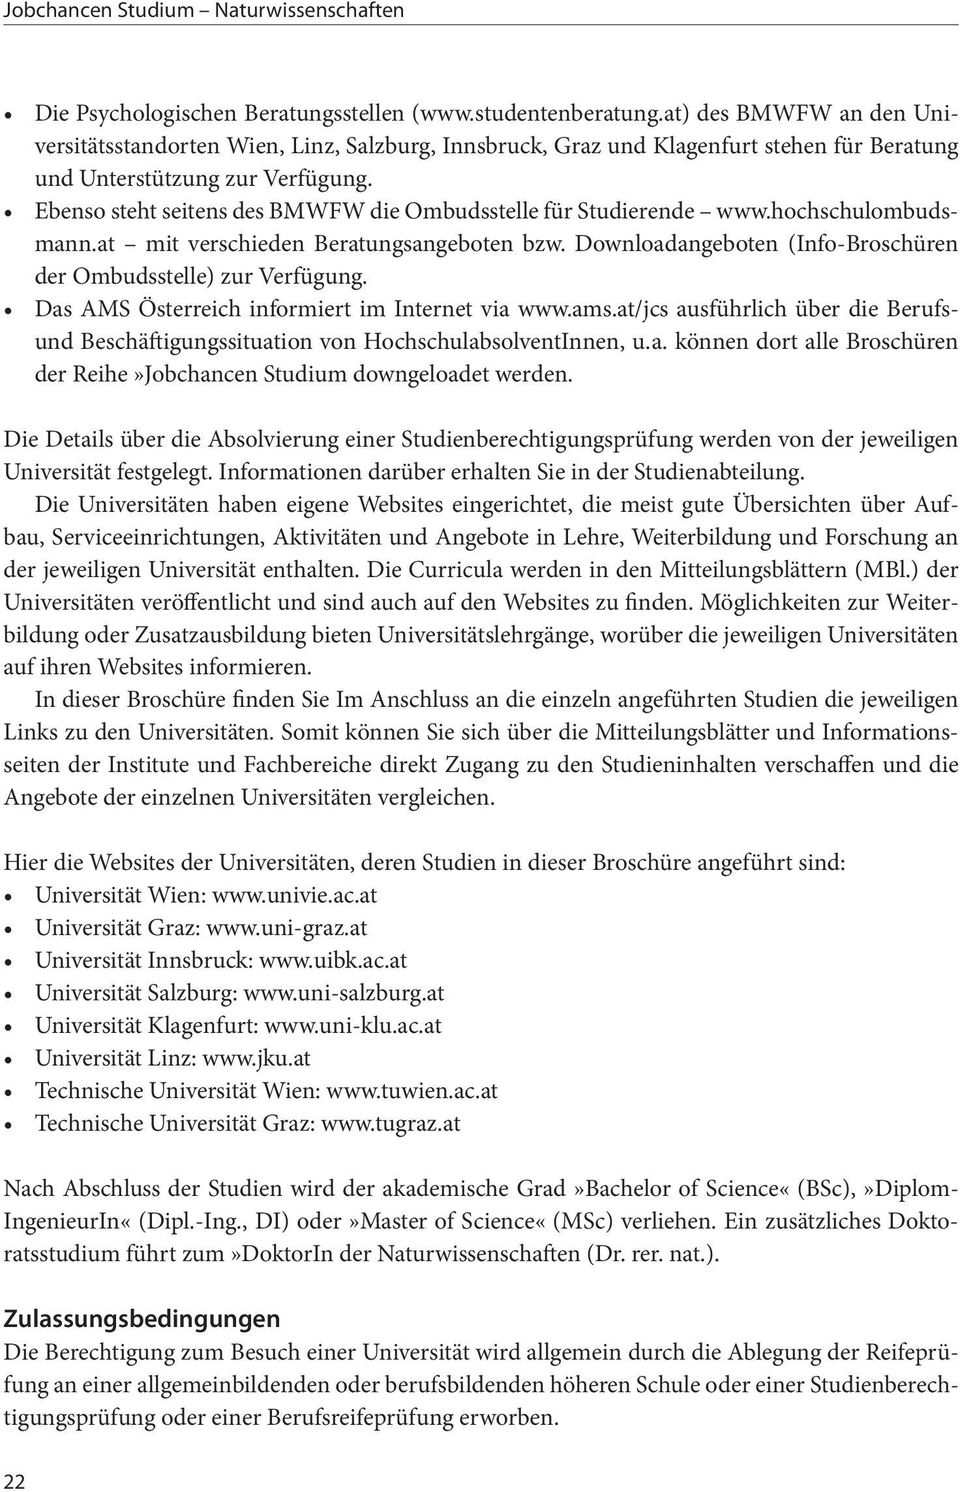 Ebenso steht seitens des BMWFW die Ombudsstelle für Studierende www.hochschulombudsmann.at mit verschieden Beratungsangeboten bzw. Downloadangeboten (Info-Broschüren der Ombudsstelle) zur Verfügung.